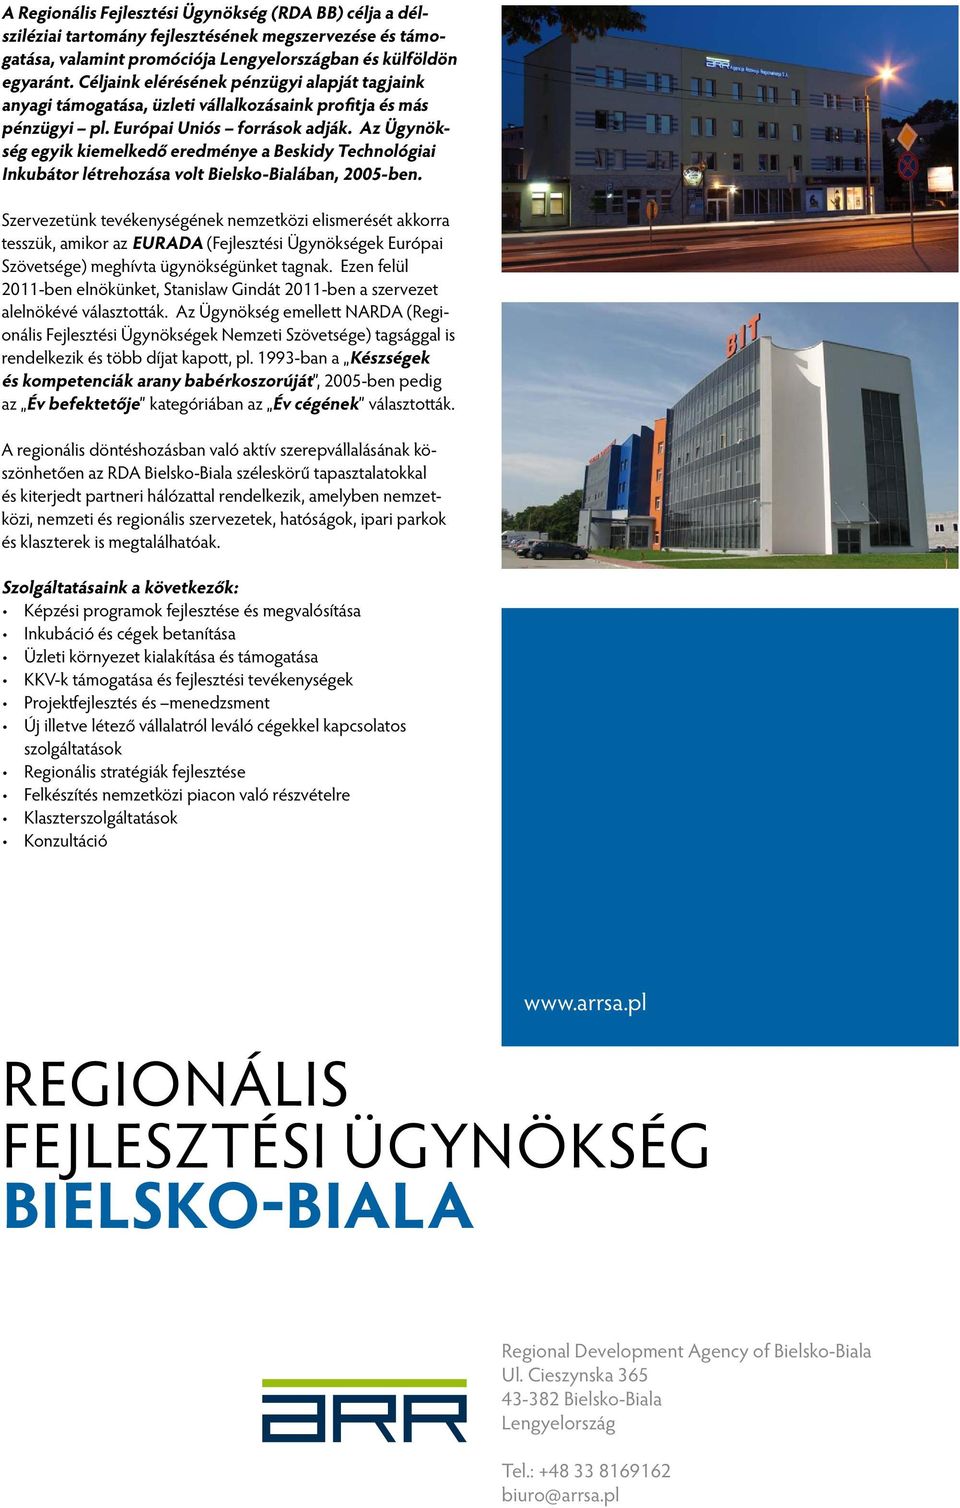 Az Ügynökség egyik kiemelkedő eredménye a Beskidy Technológiai Inkubátor létrehozása volt Bielsko-Bialában, 2005-ben.